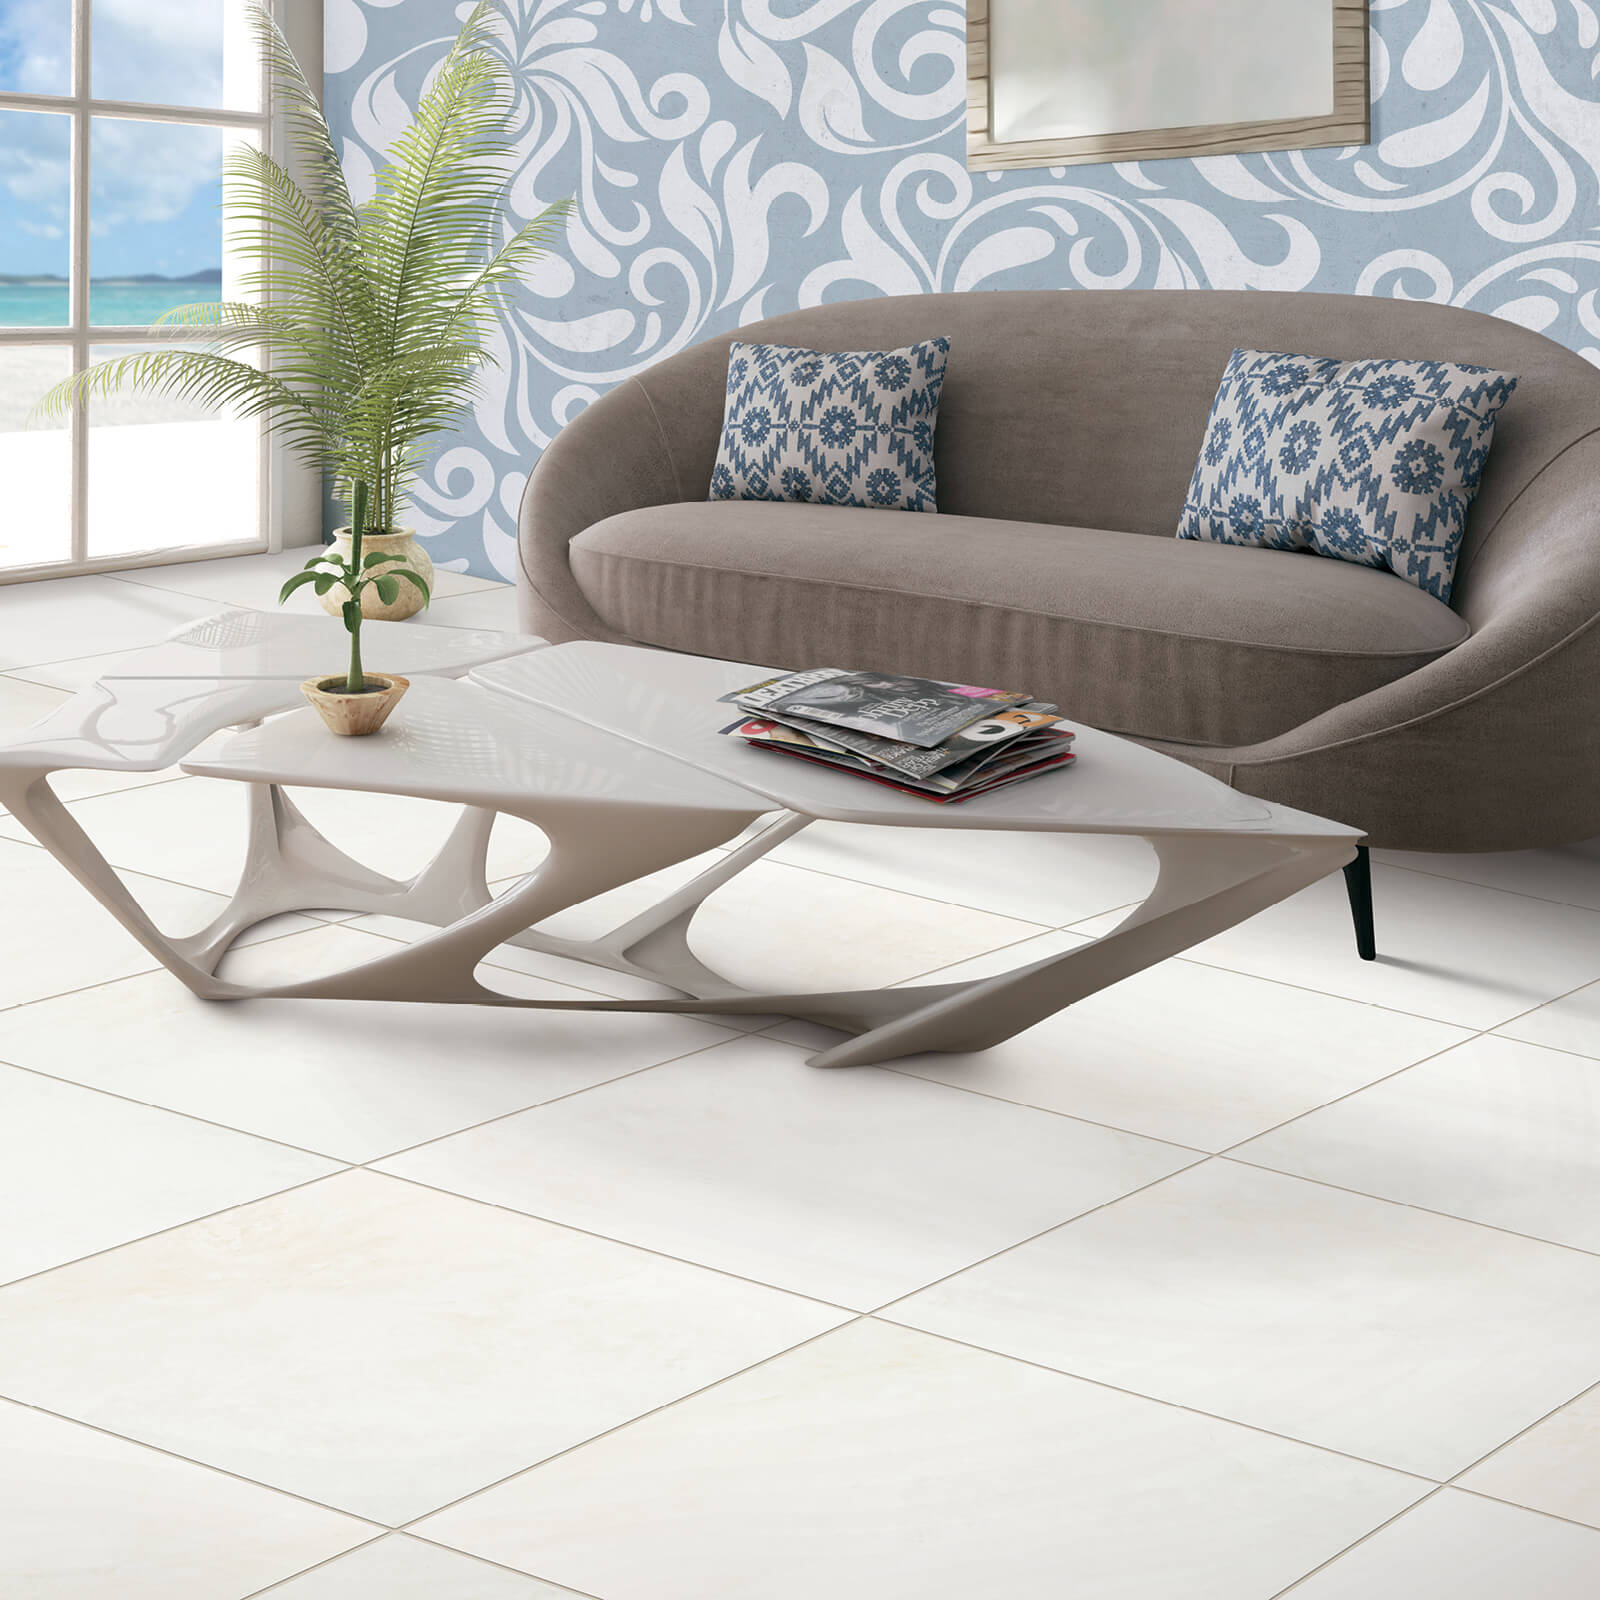 Tile flooring | CarpetsPlus COLORTILE of Hutchinson